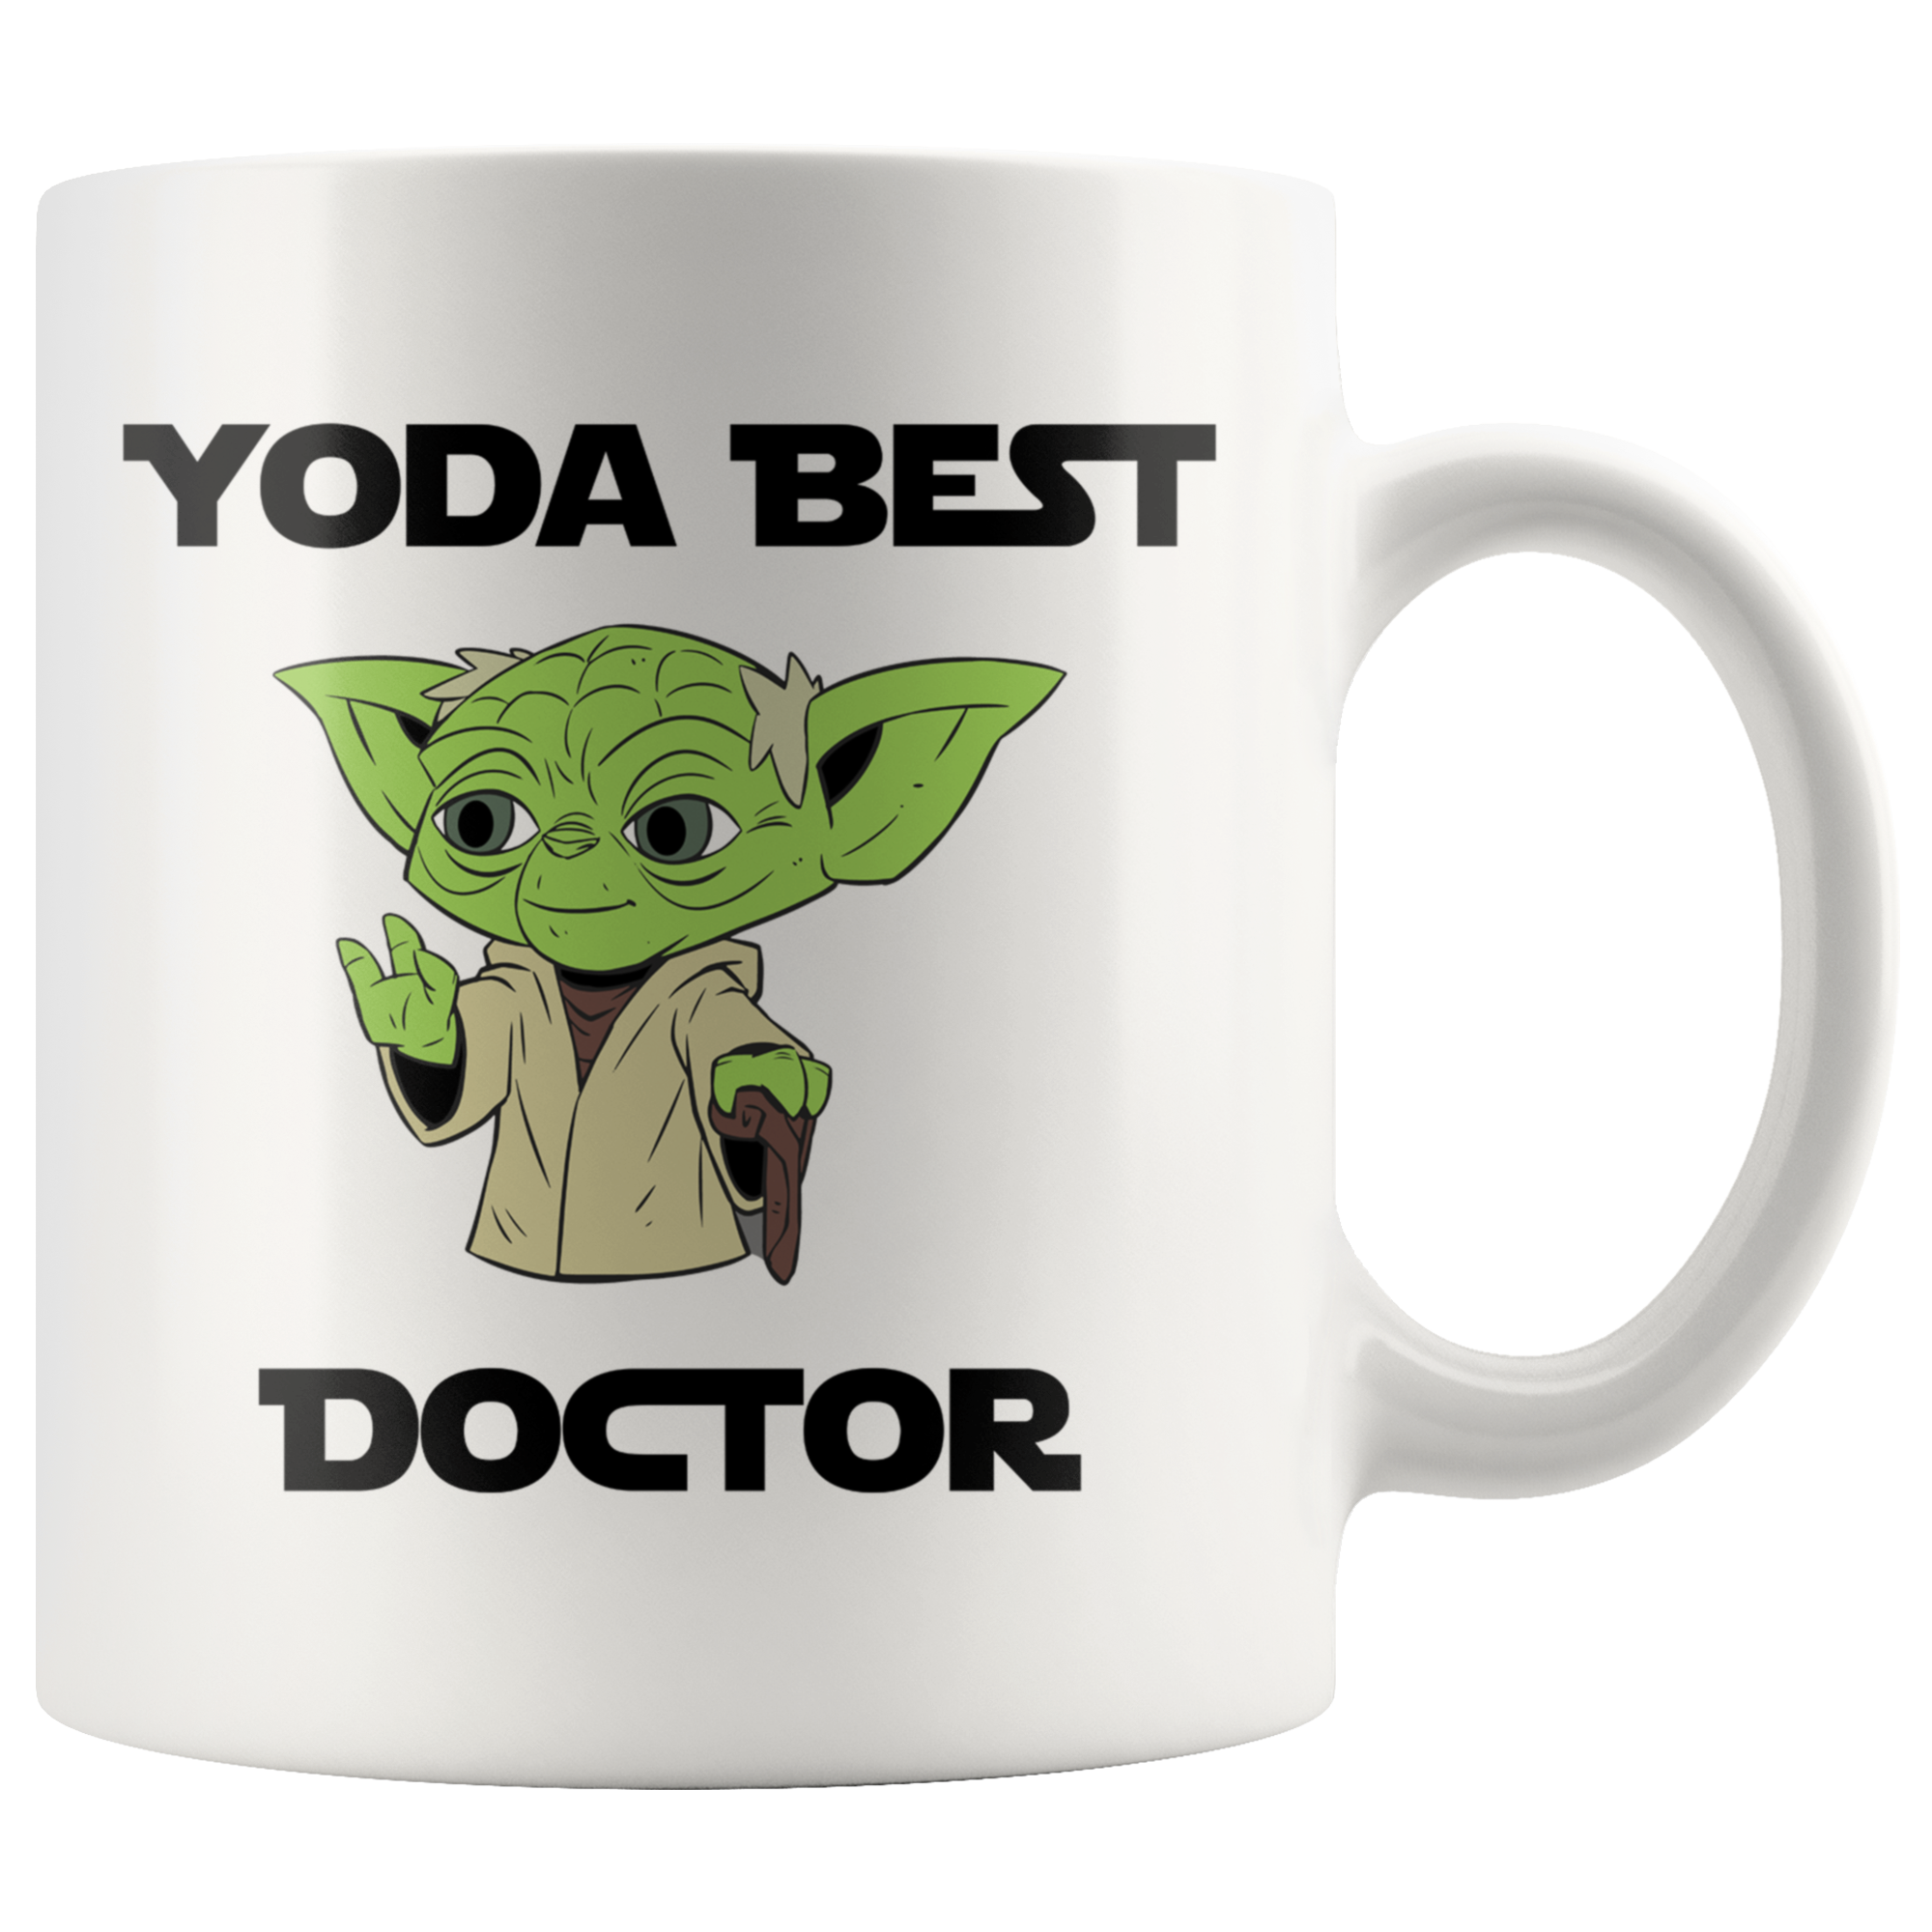 Yoda Best Doctor 11oz Coffee Mug - TL